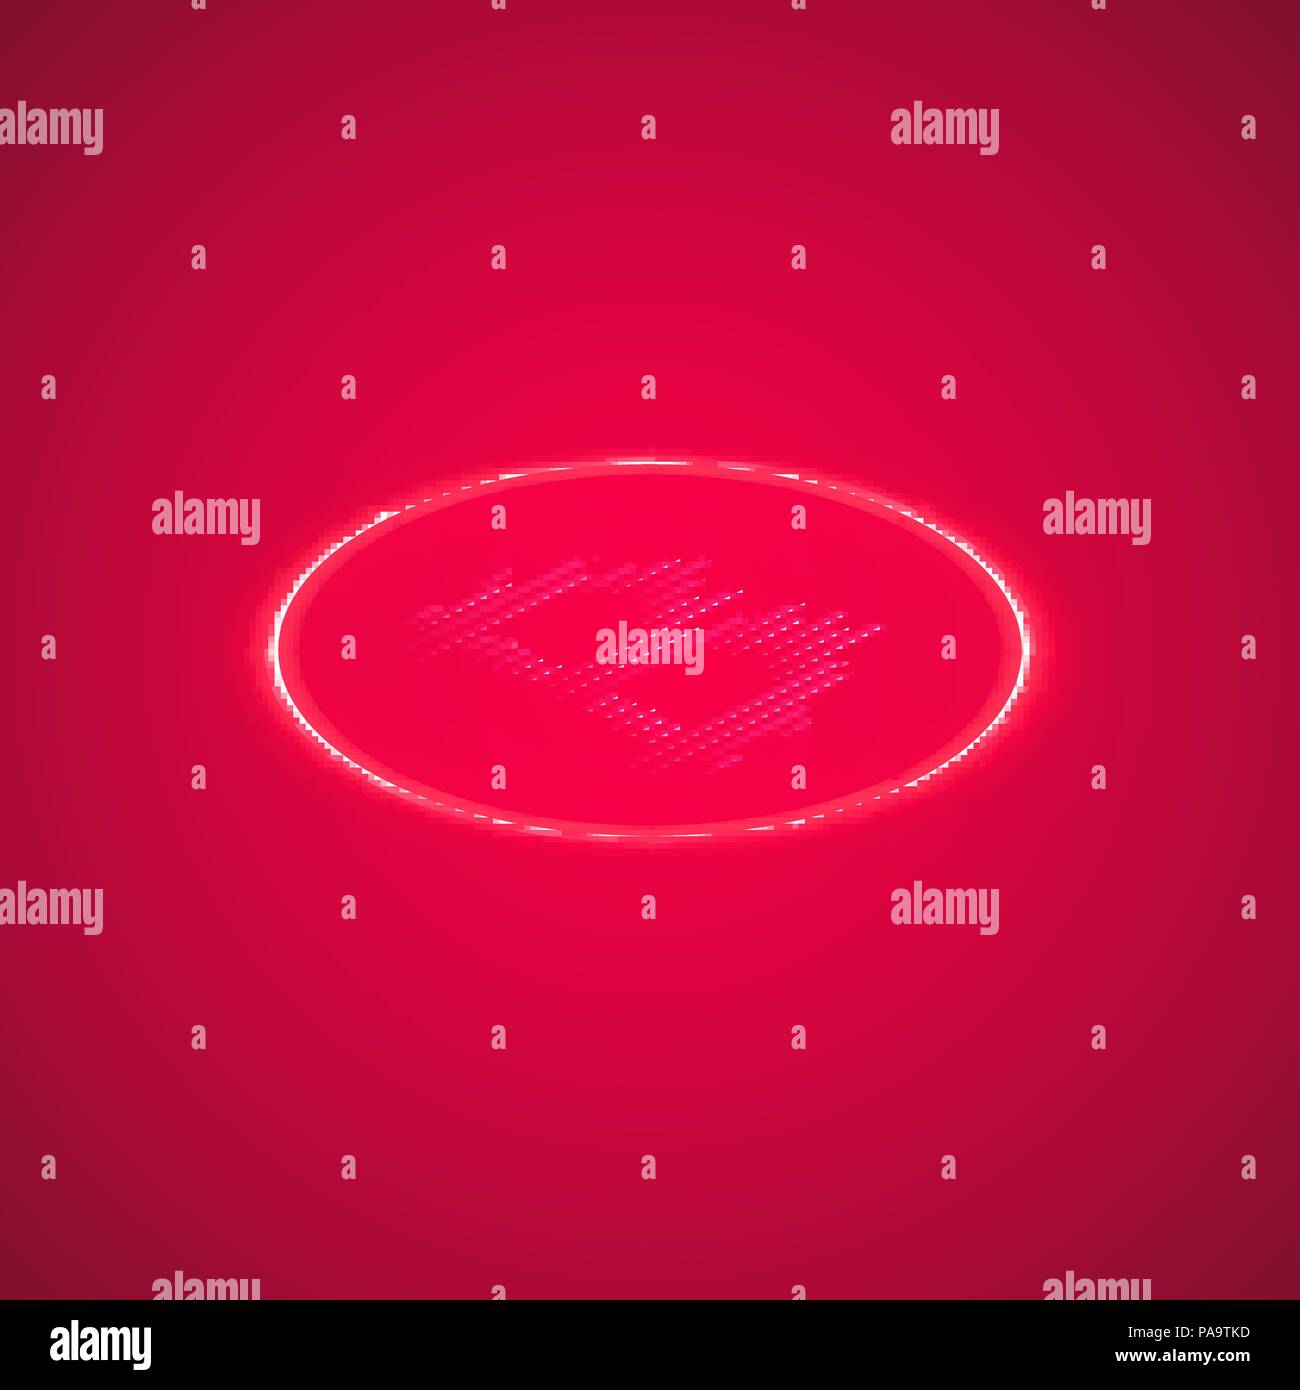 Abstract neon pink anello di energia con bitcoin su uno sfondo di colore rosa. Isometrico. Illustrazione Vettoriale